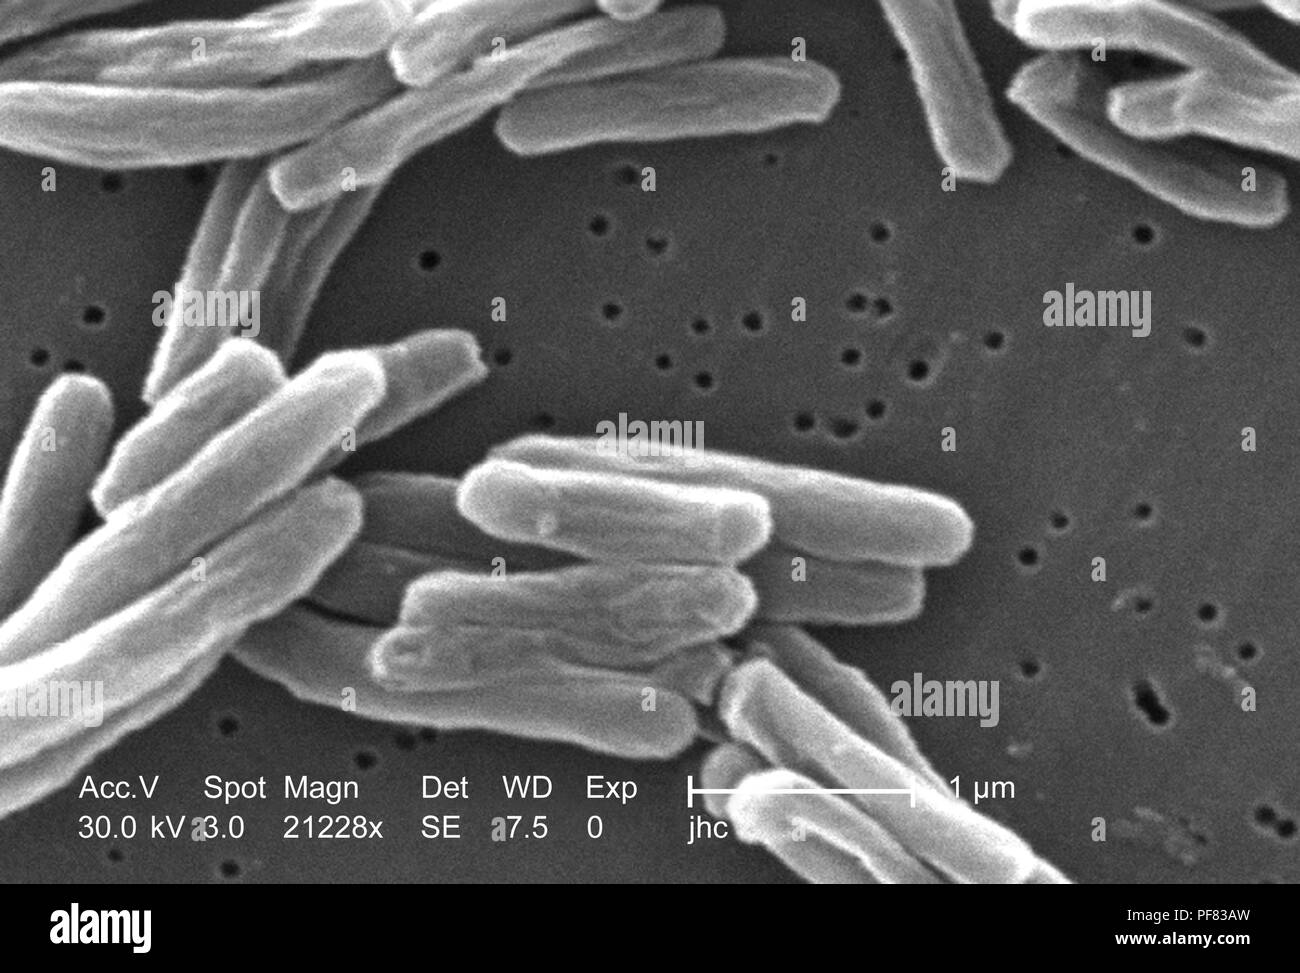 Dettagli ultrastrutturali di Gram-positivi di Mycobacterium tuberculosis batteri hanno rivelato nel 21228x scansione ingrandita al microscopio elettronico (SEM) immagine, 2006. Immagine cortesia di centri per il controllo delle malattie (CDC) / Ray Butler, MS, Janice Haney Carr. () Foto Stock